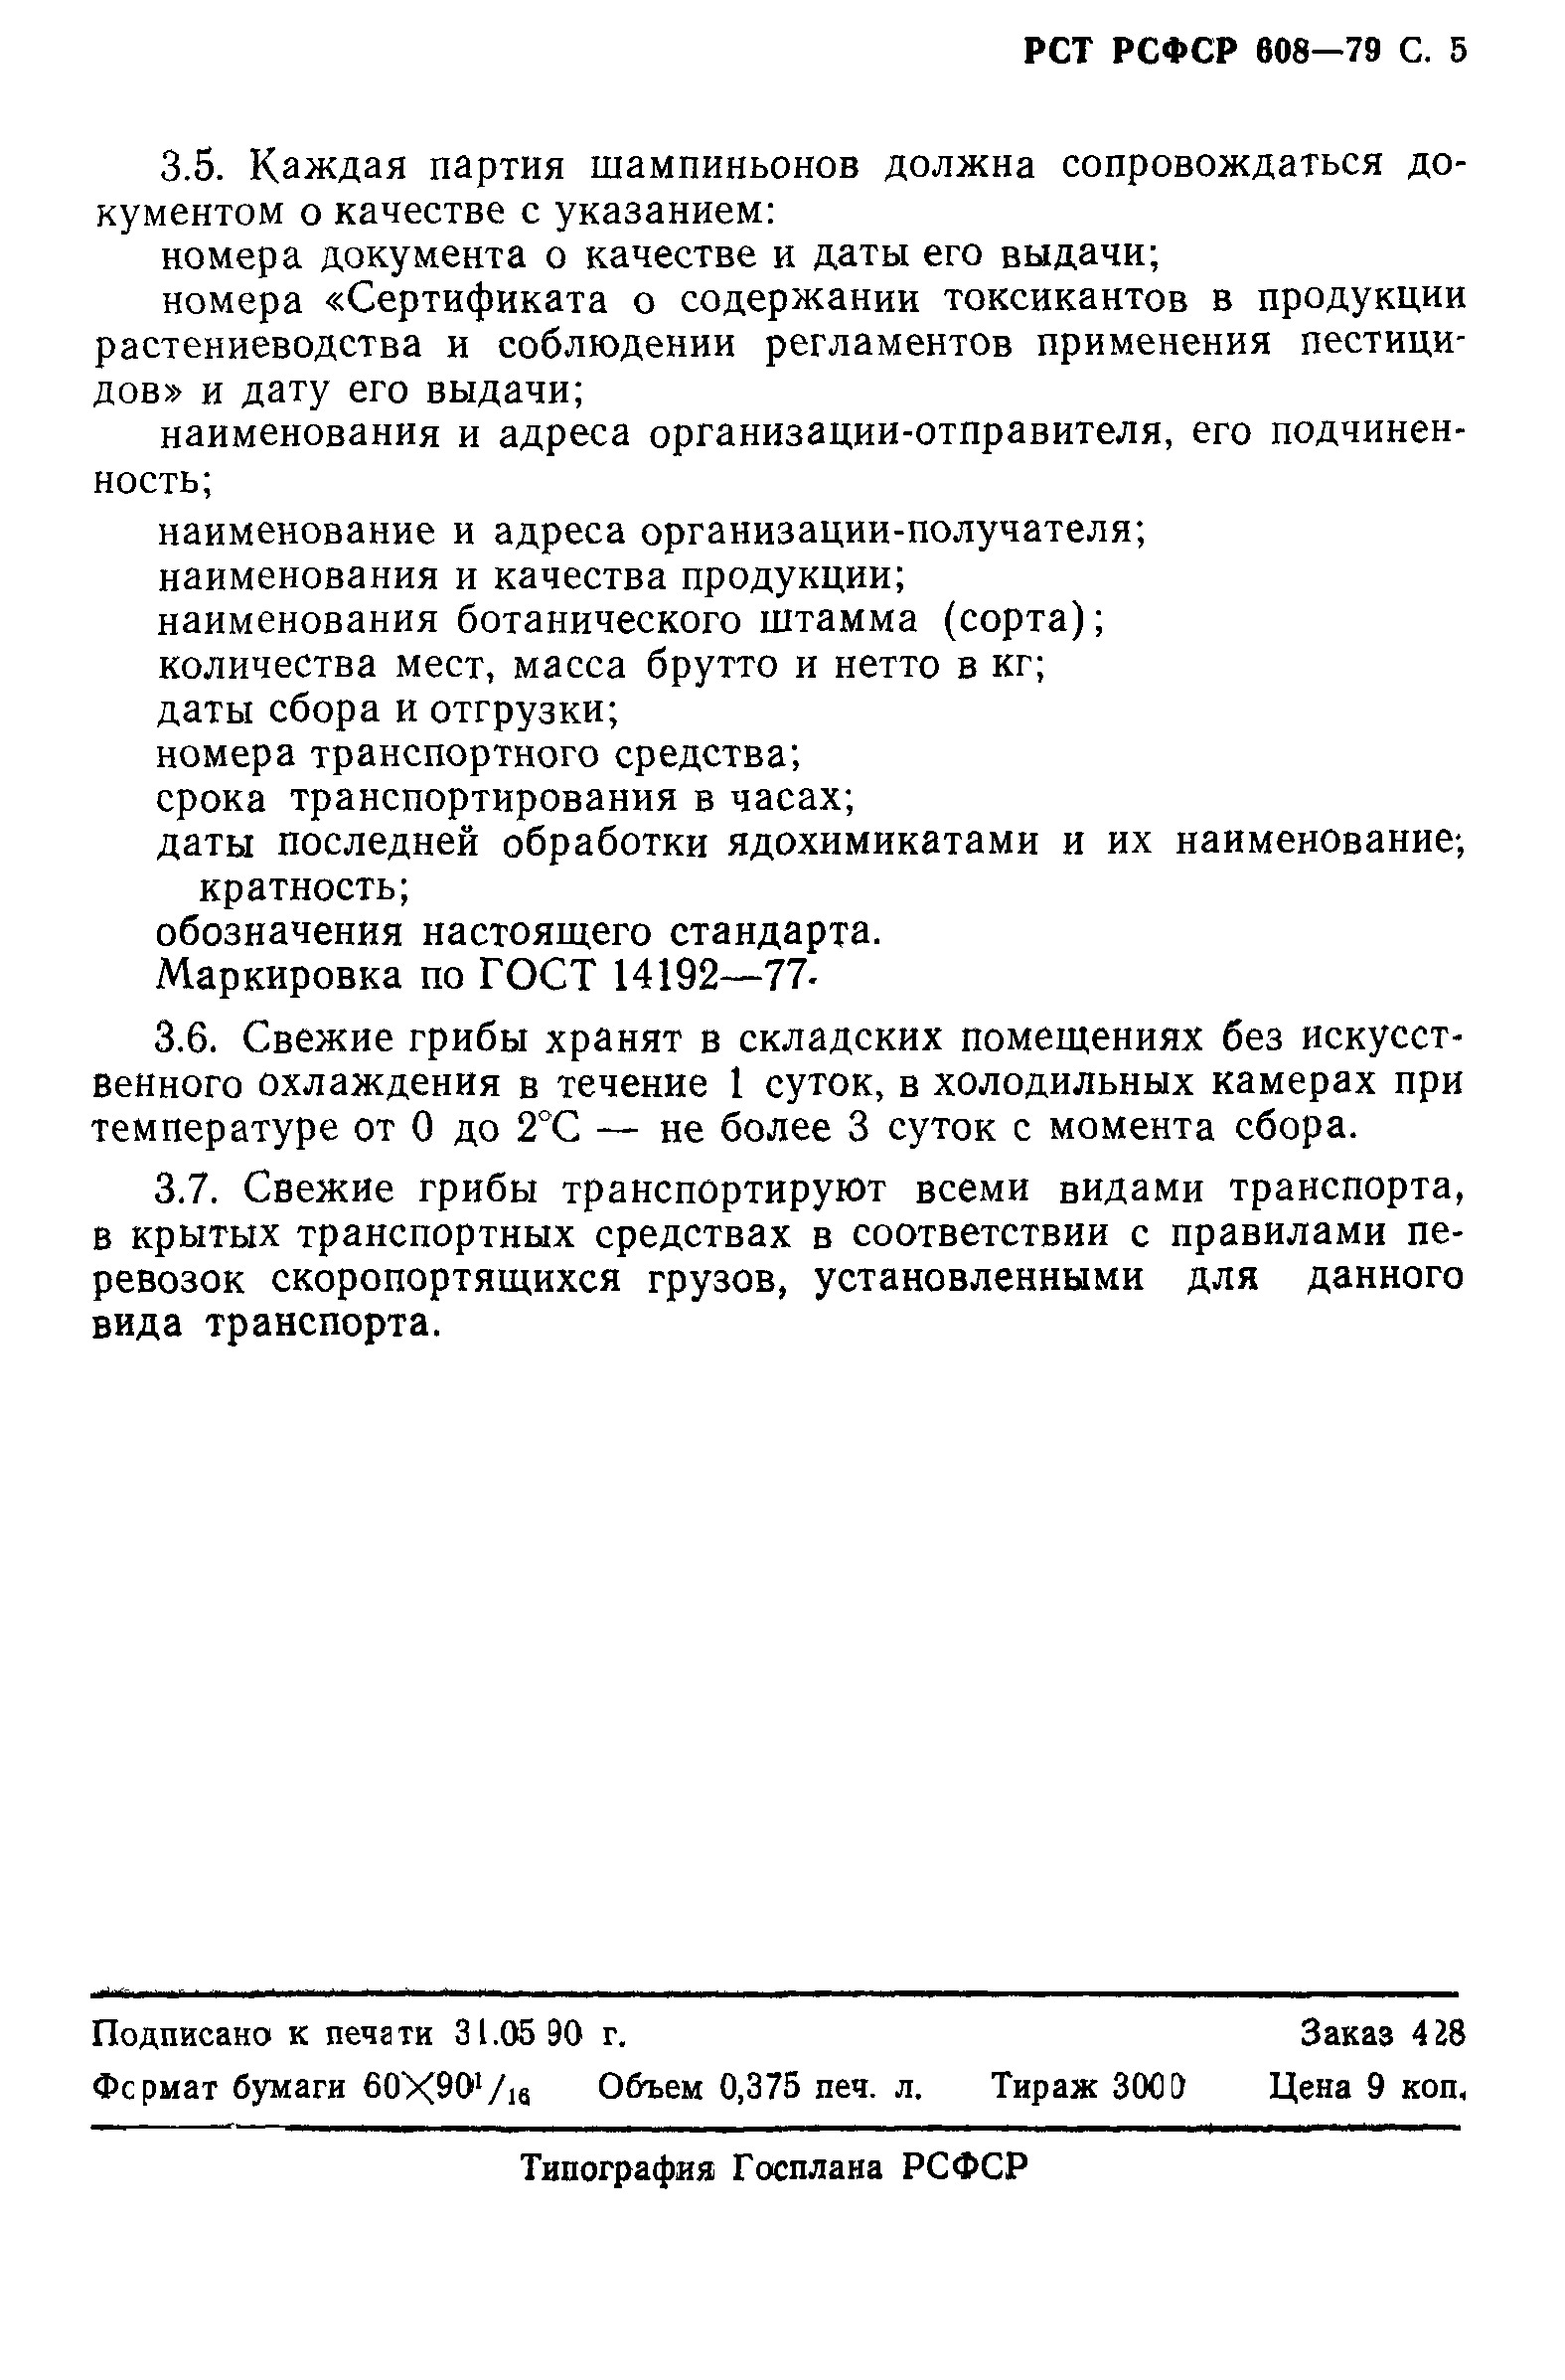 РСТ РСФСР 608-79